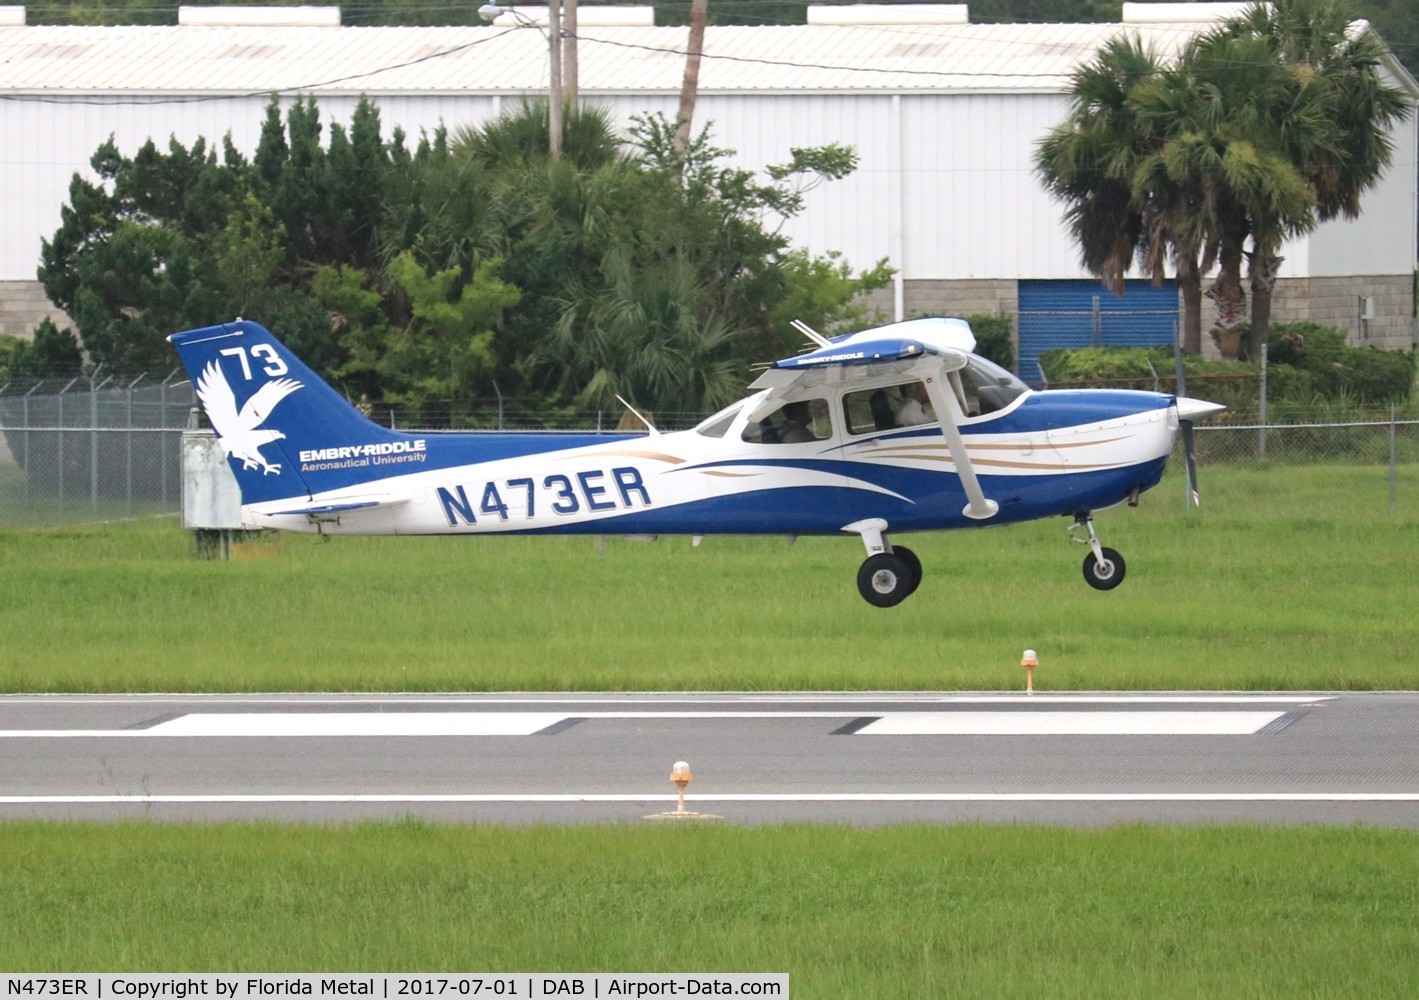 N473ER, 2015 Cessna 172S C/N 172S11600, Embry Riddle